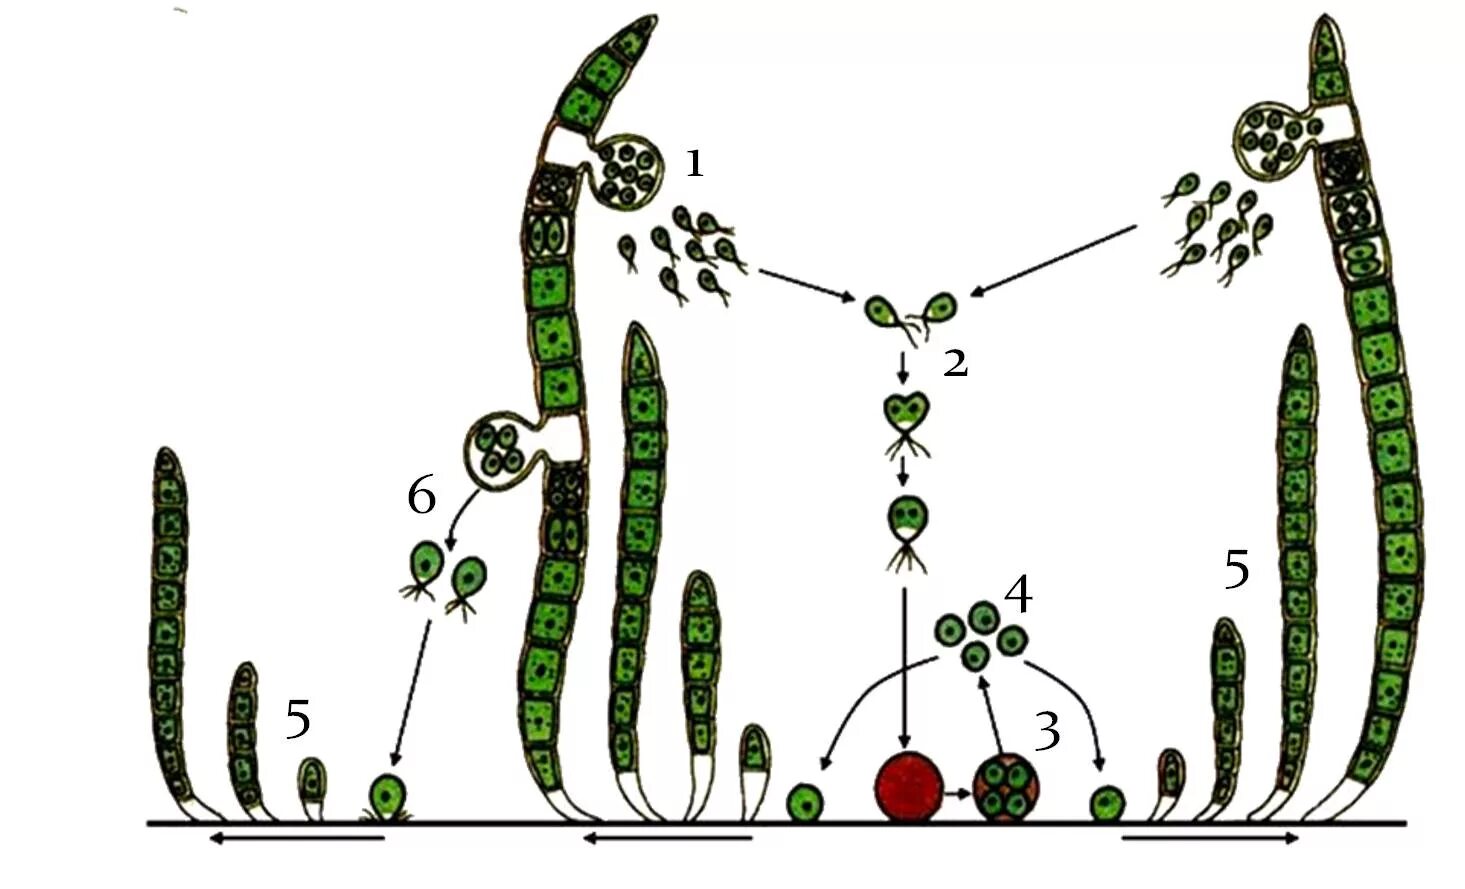 Сходство строения мха и строения водорослей. Улотрикс цикл размножения. Размножение водорослей схема улотрикс. Улотрикс бесполое размножение. Цикл развития улотрикса схема.